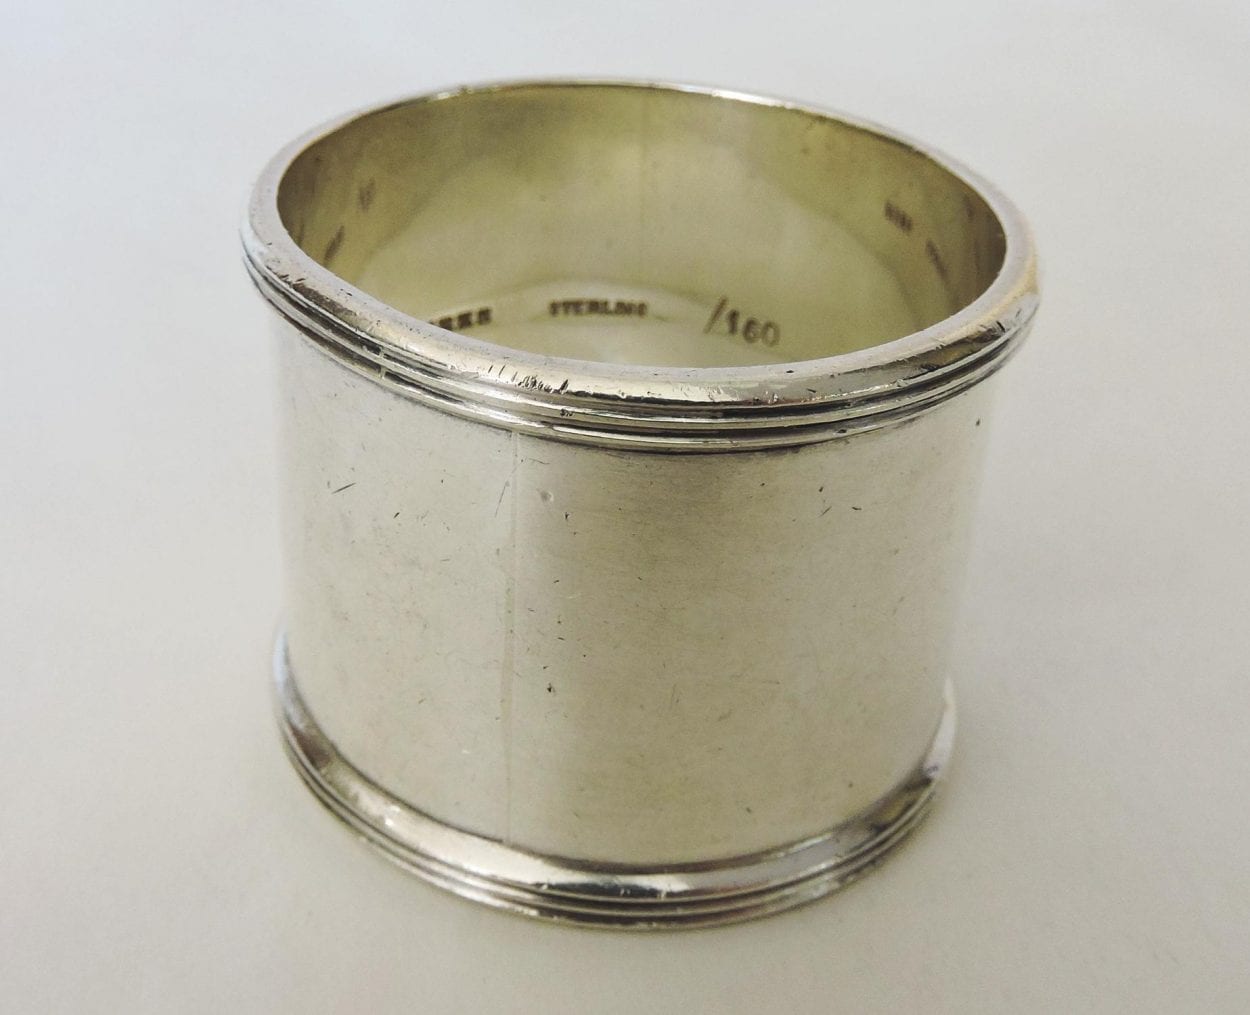 Birks Sterling Silver Napkin Ring - circa 1915 - 70 grams